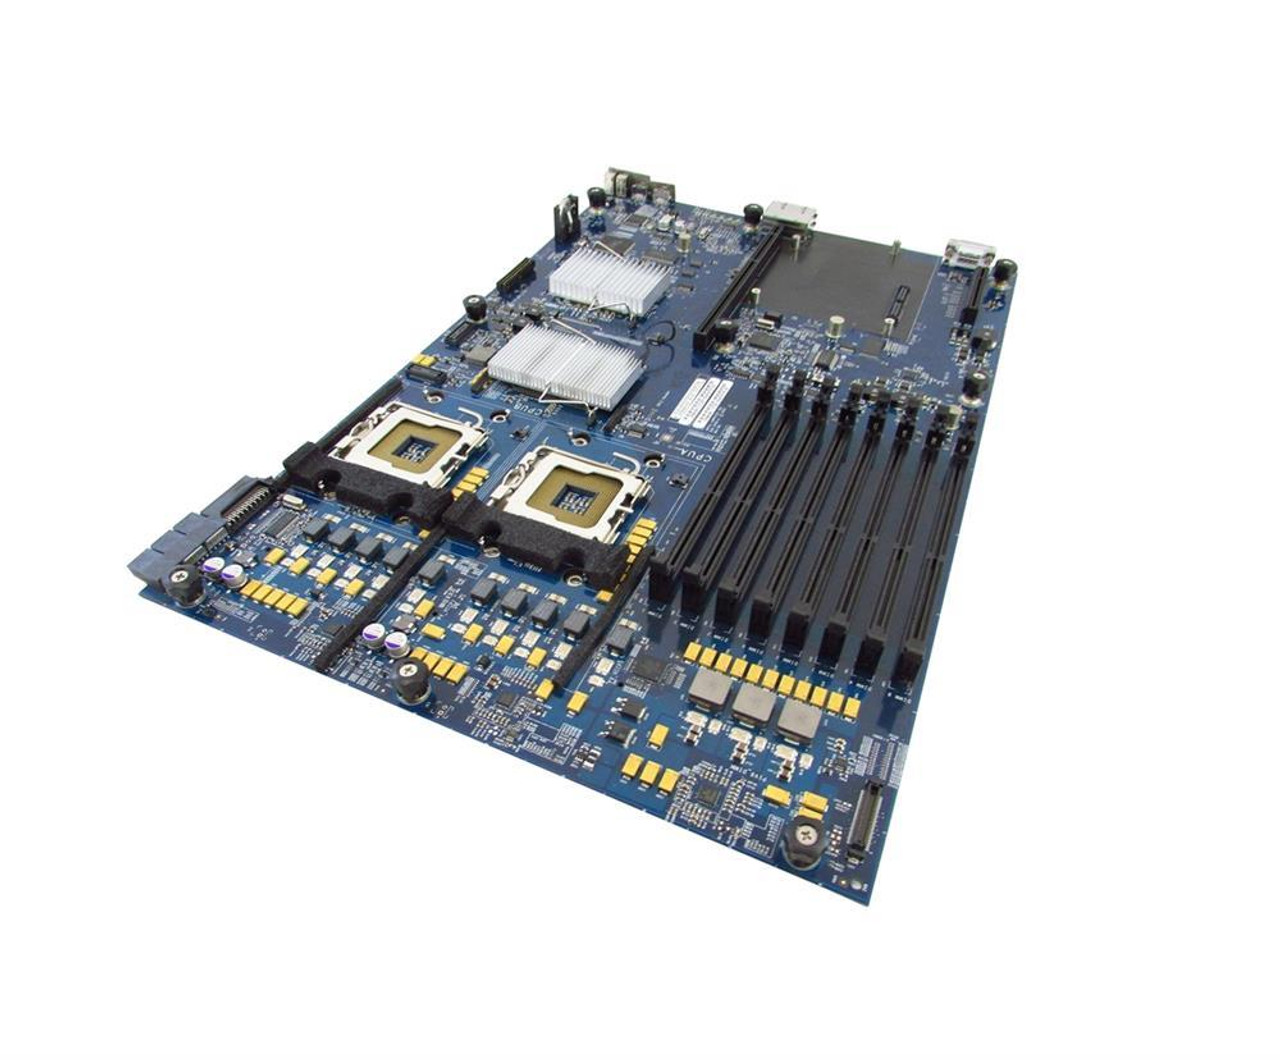 820-2006-A Apple System Board (Motherboard) for Xserve Logic Board (Refurbished)